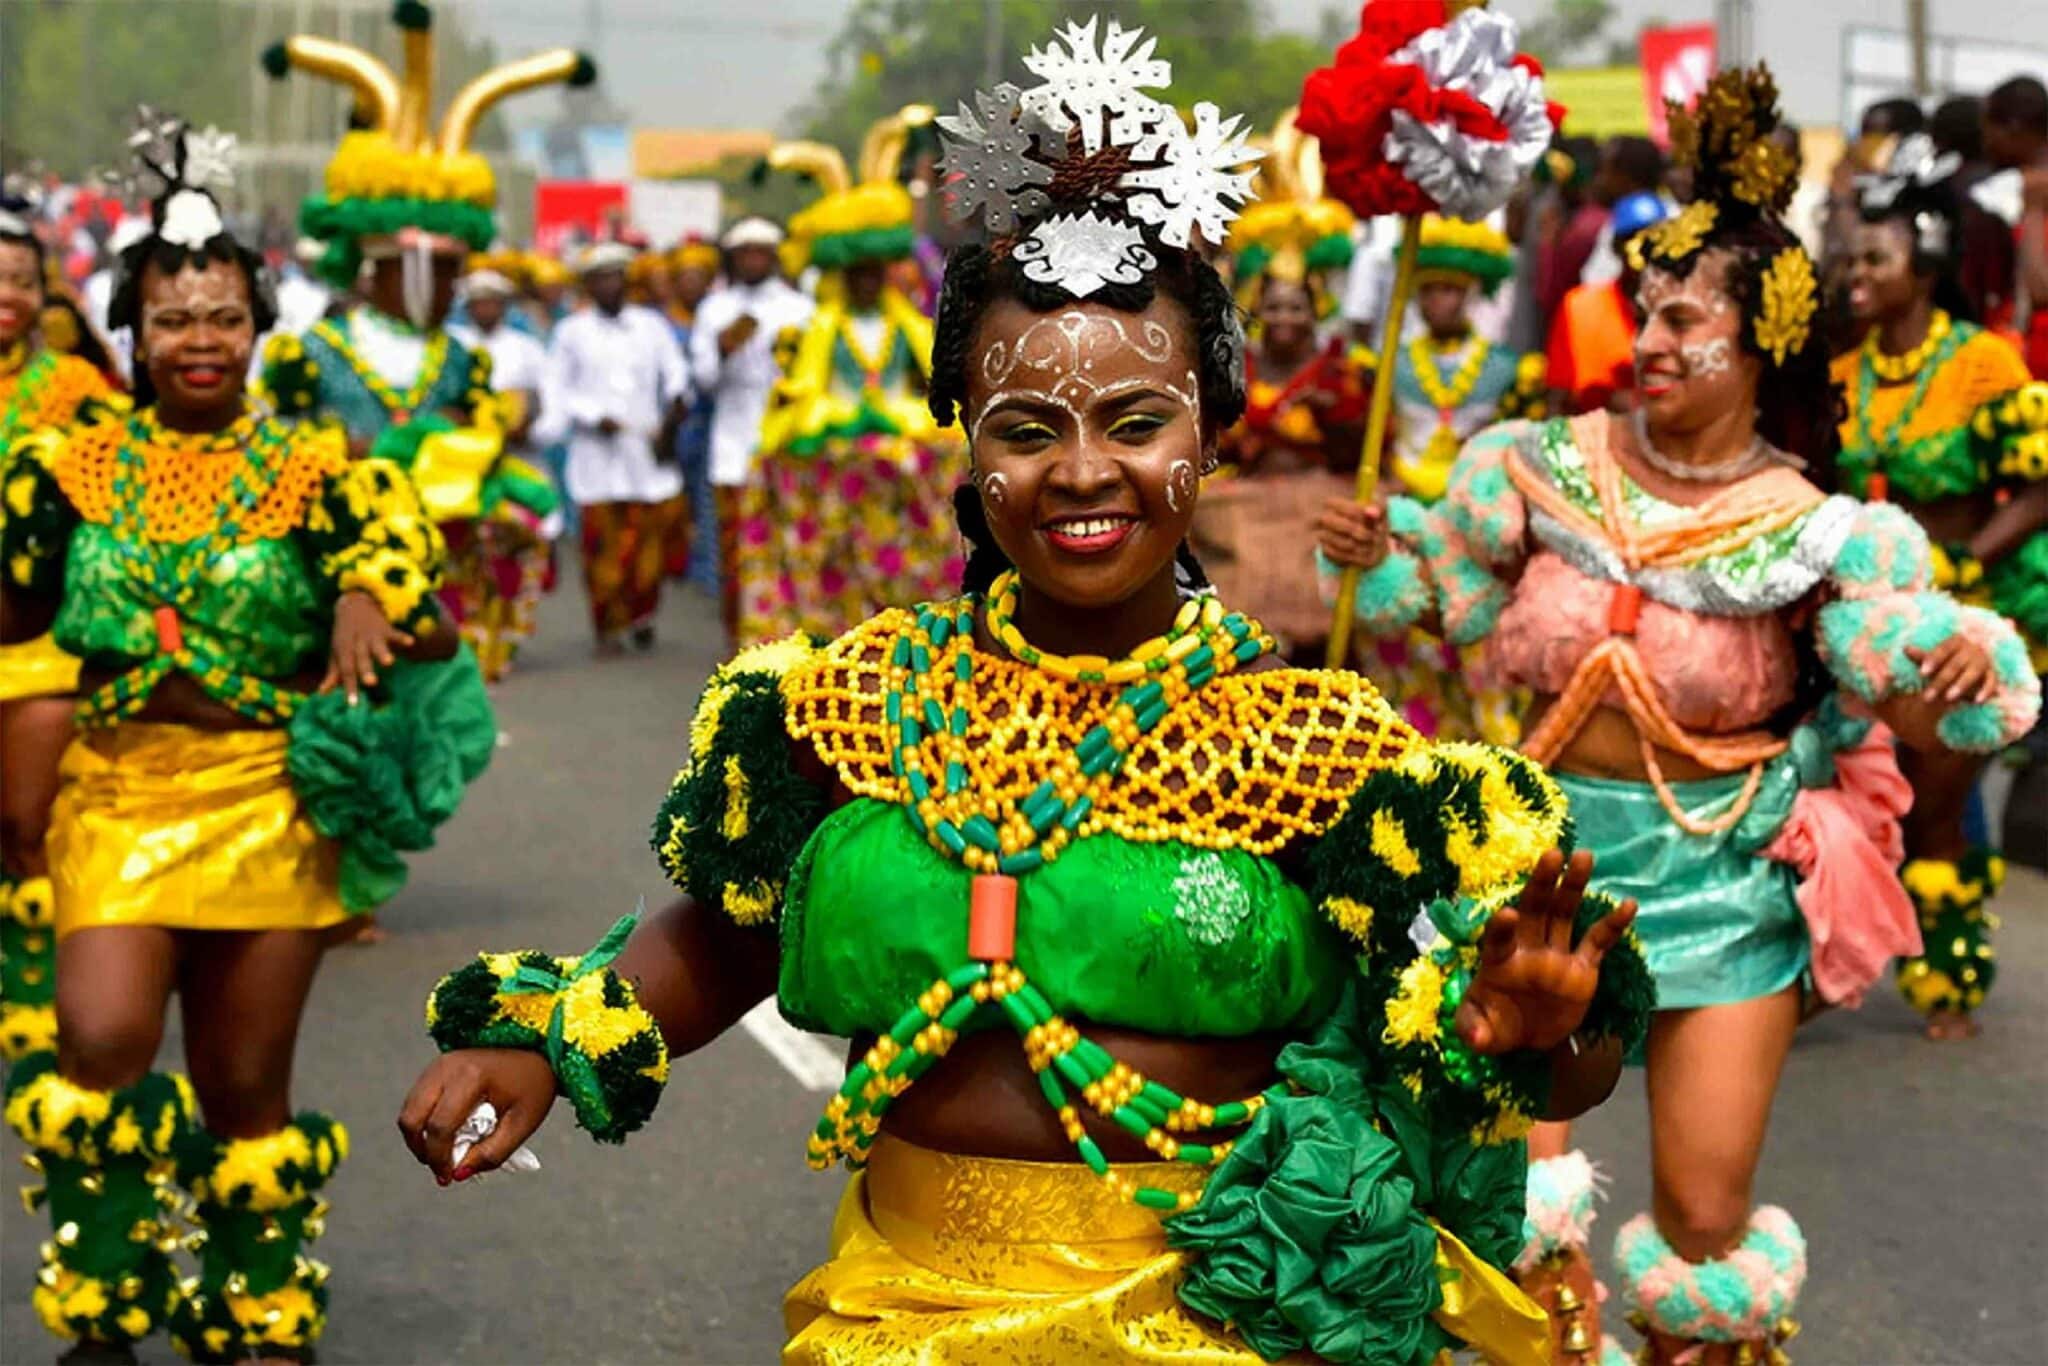 The Calabar Carnival